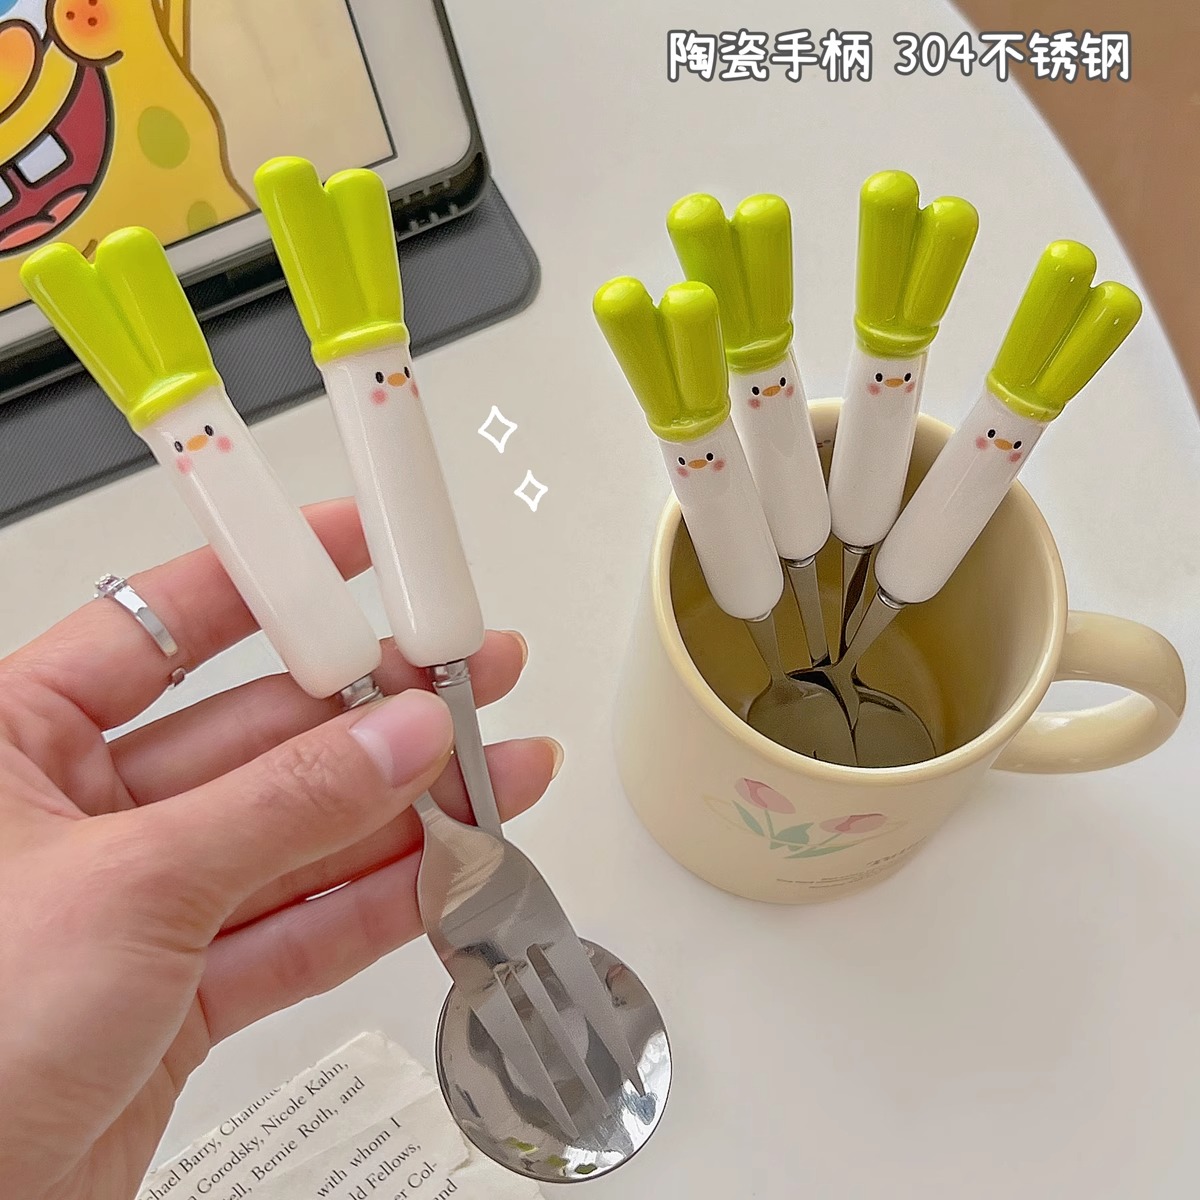 可爱大葱筷子勺子餐具套装家用学生创意叉子三件套单人便携收纳盒